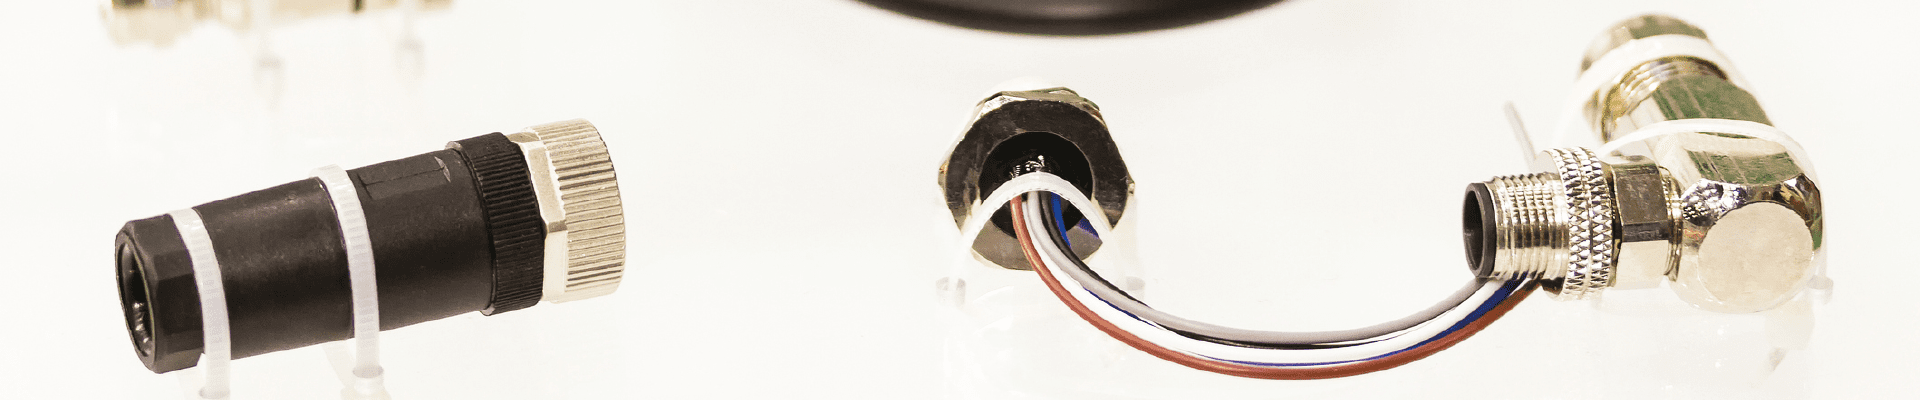 Optic fiber connector